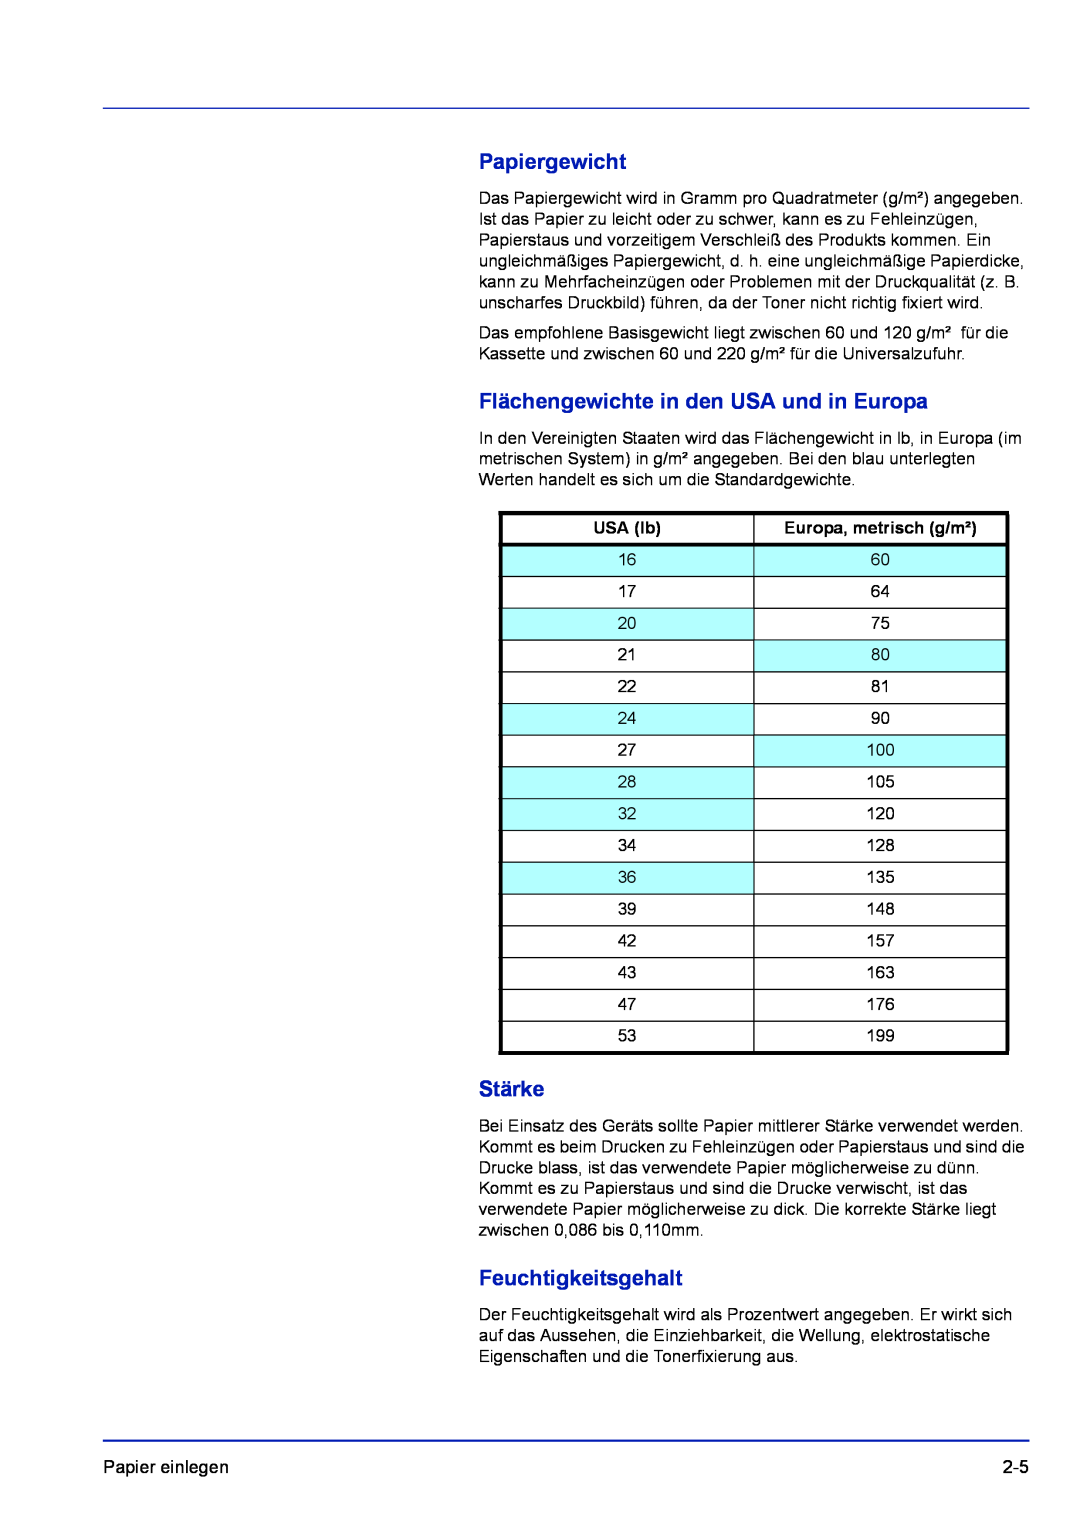 Kyocera FS-1320D, FS-1120D Papiergewicht, Flächengewichte in den USA und in Europa, Stärke, Feuchtigkeitsgehalt, USA lb 